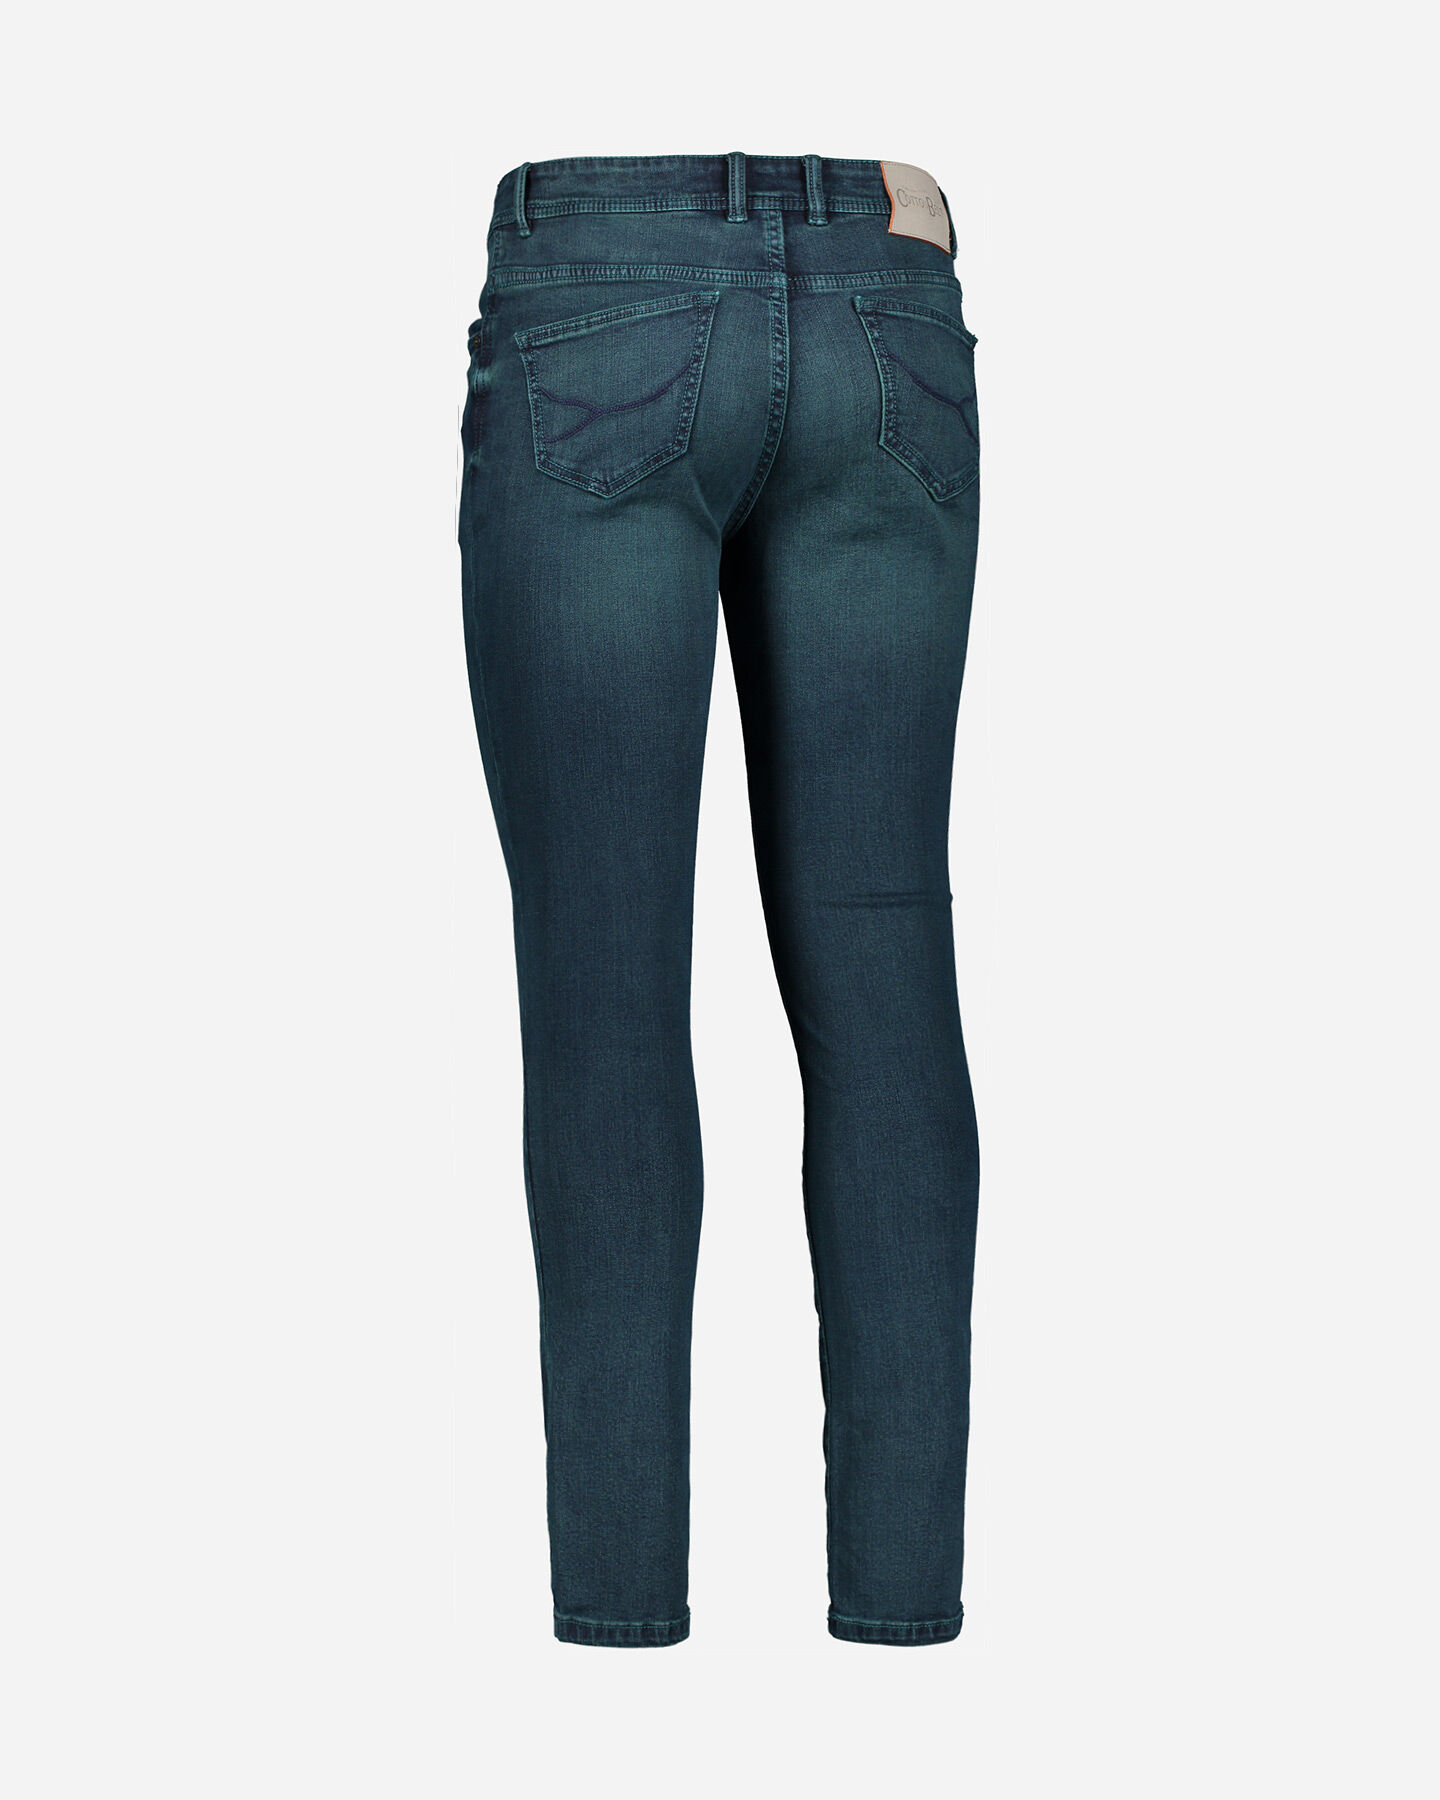  Jeans COTTON BELT CHANDLER SLIM M S4070901|M788|30 scatto 5